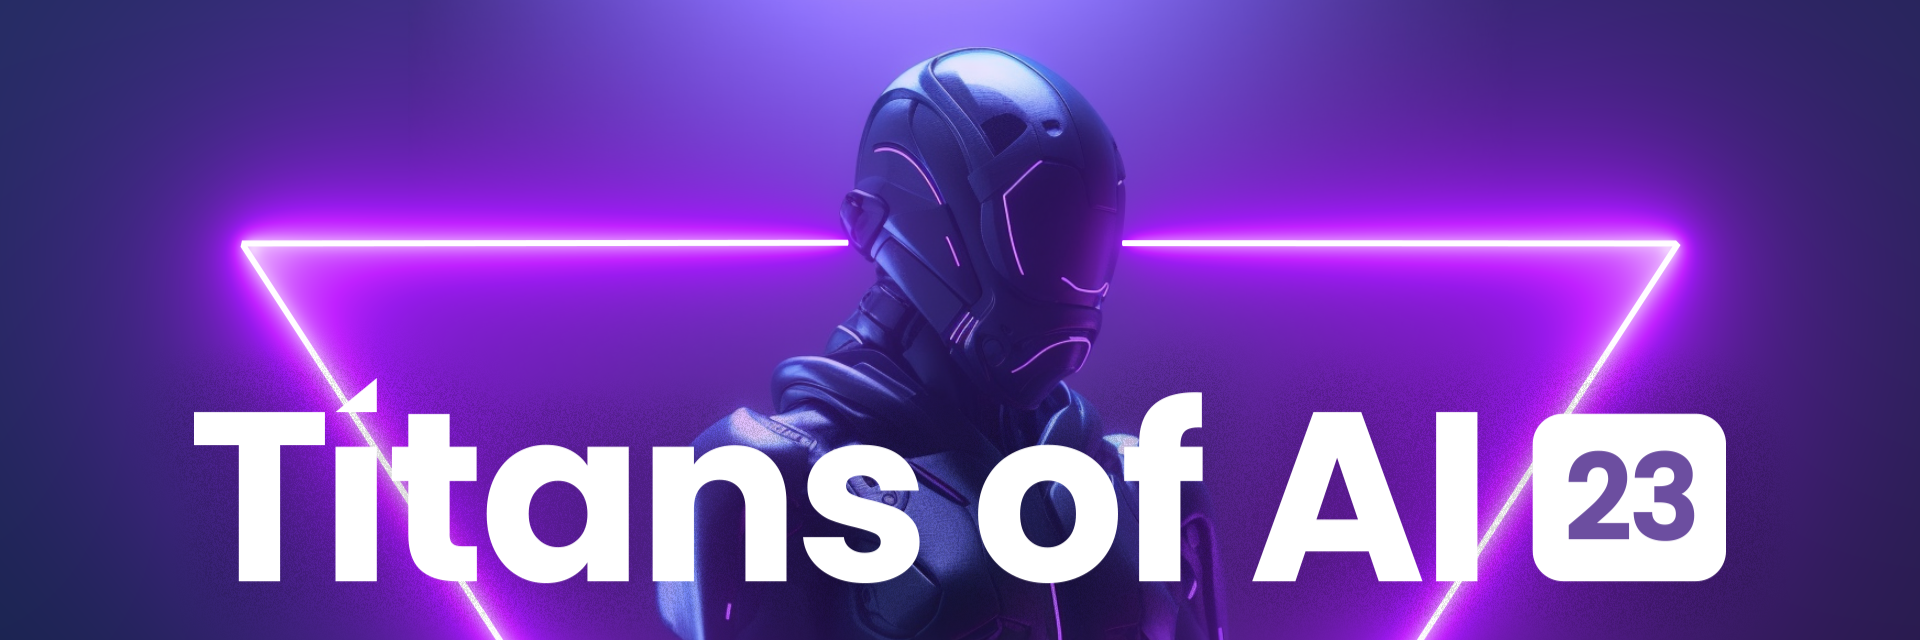 Titans of AI | San Francisco, CA